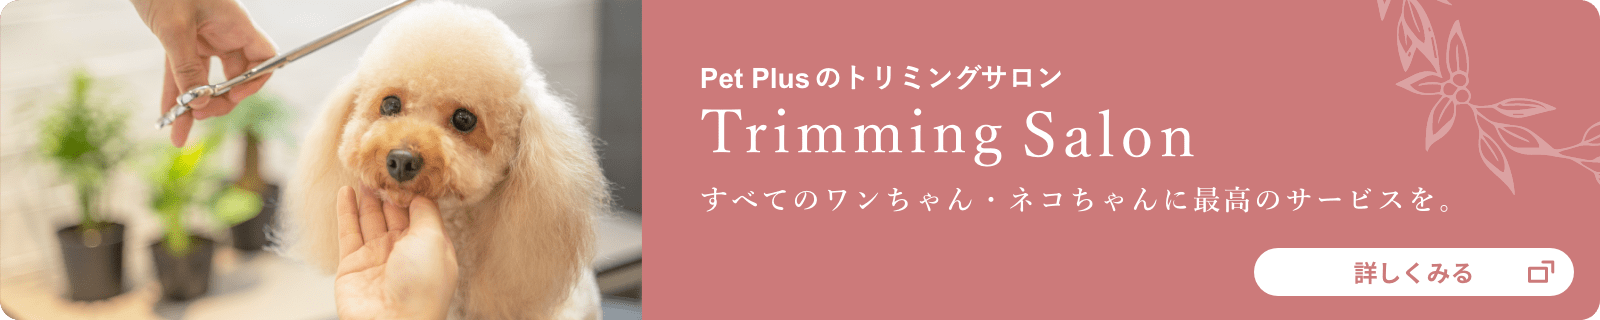 Pet PlusのトリミングサロンTrimming Salon すべてのワンちゃん・ネコちゃんに最高のサービスを。